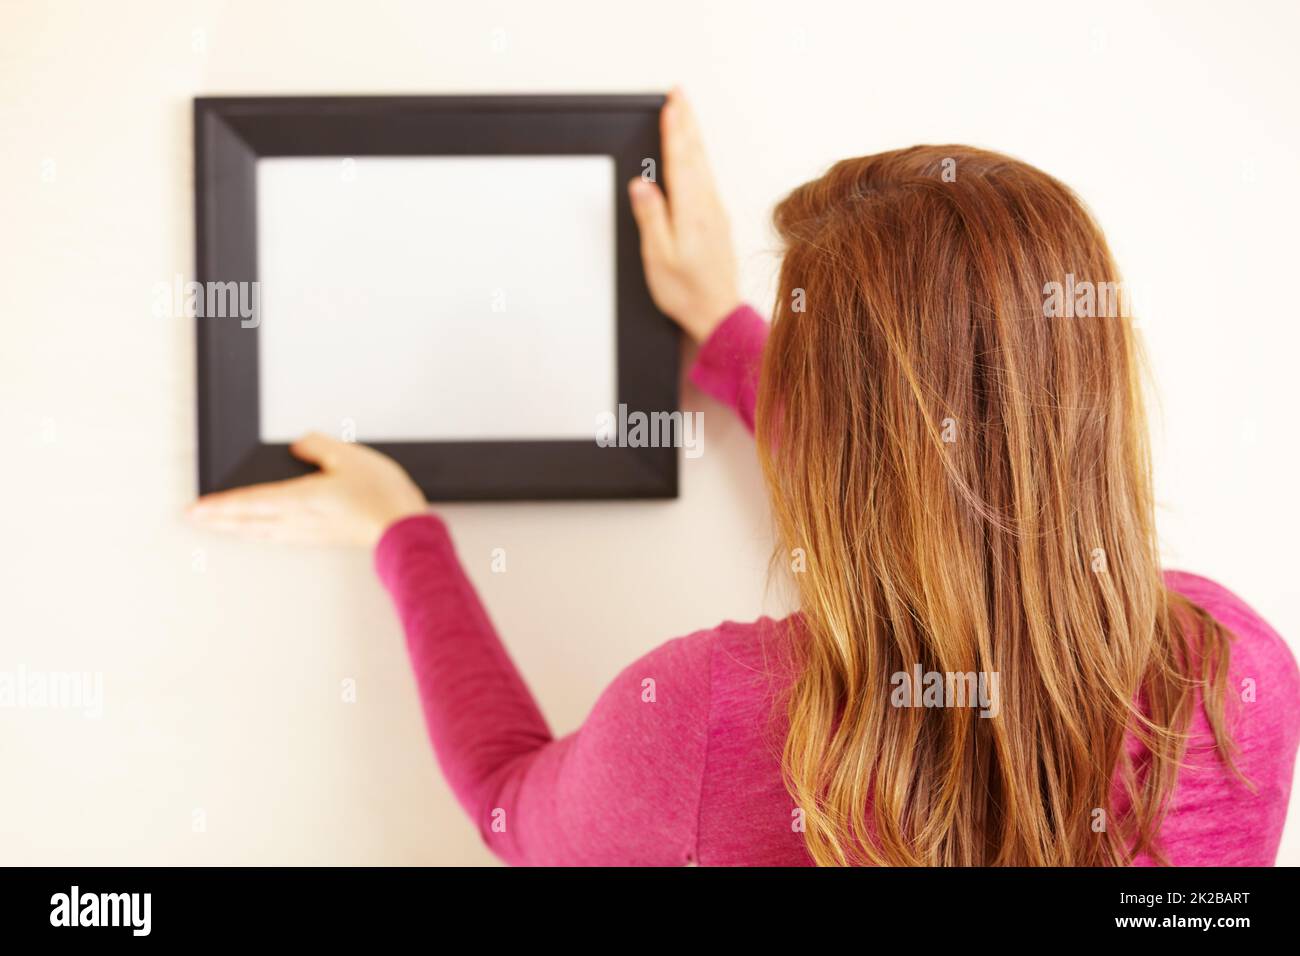 Immagine perfetta. Ripresa posteriore di una donna che mette una cornice vuota su una parete. Foto Stock